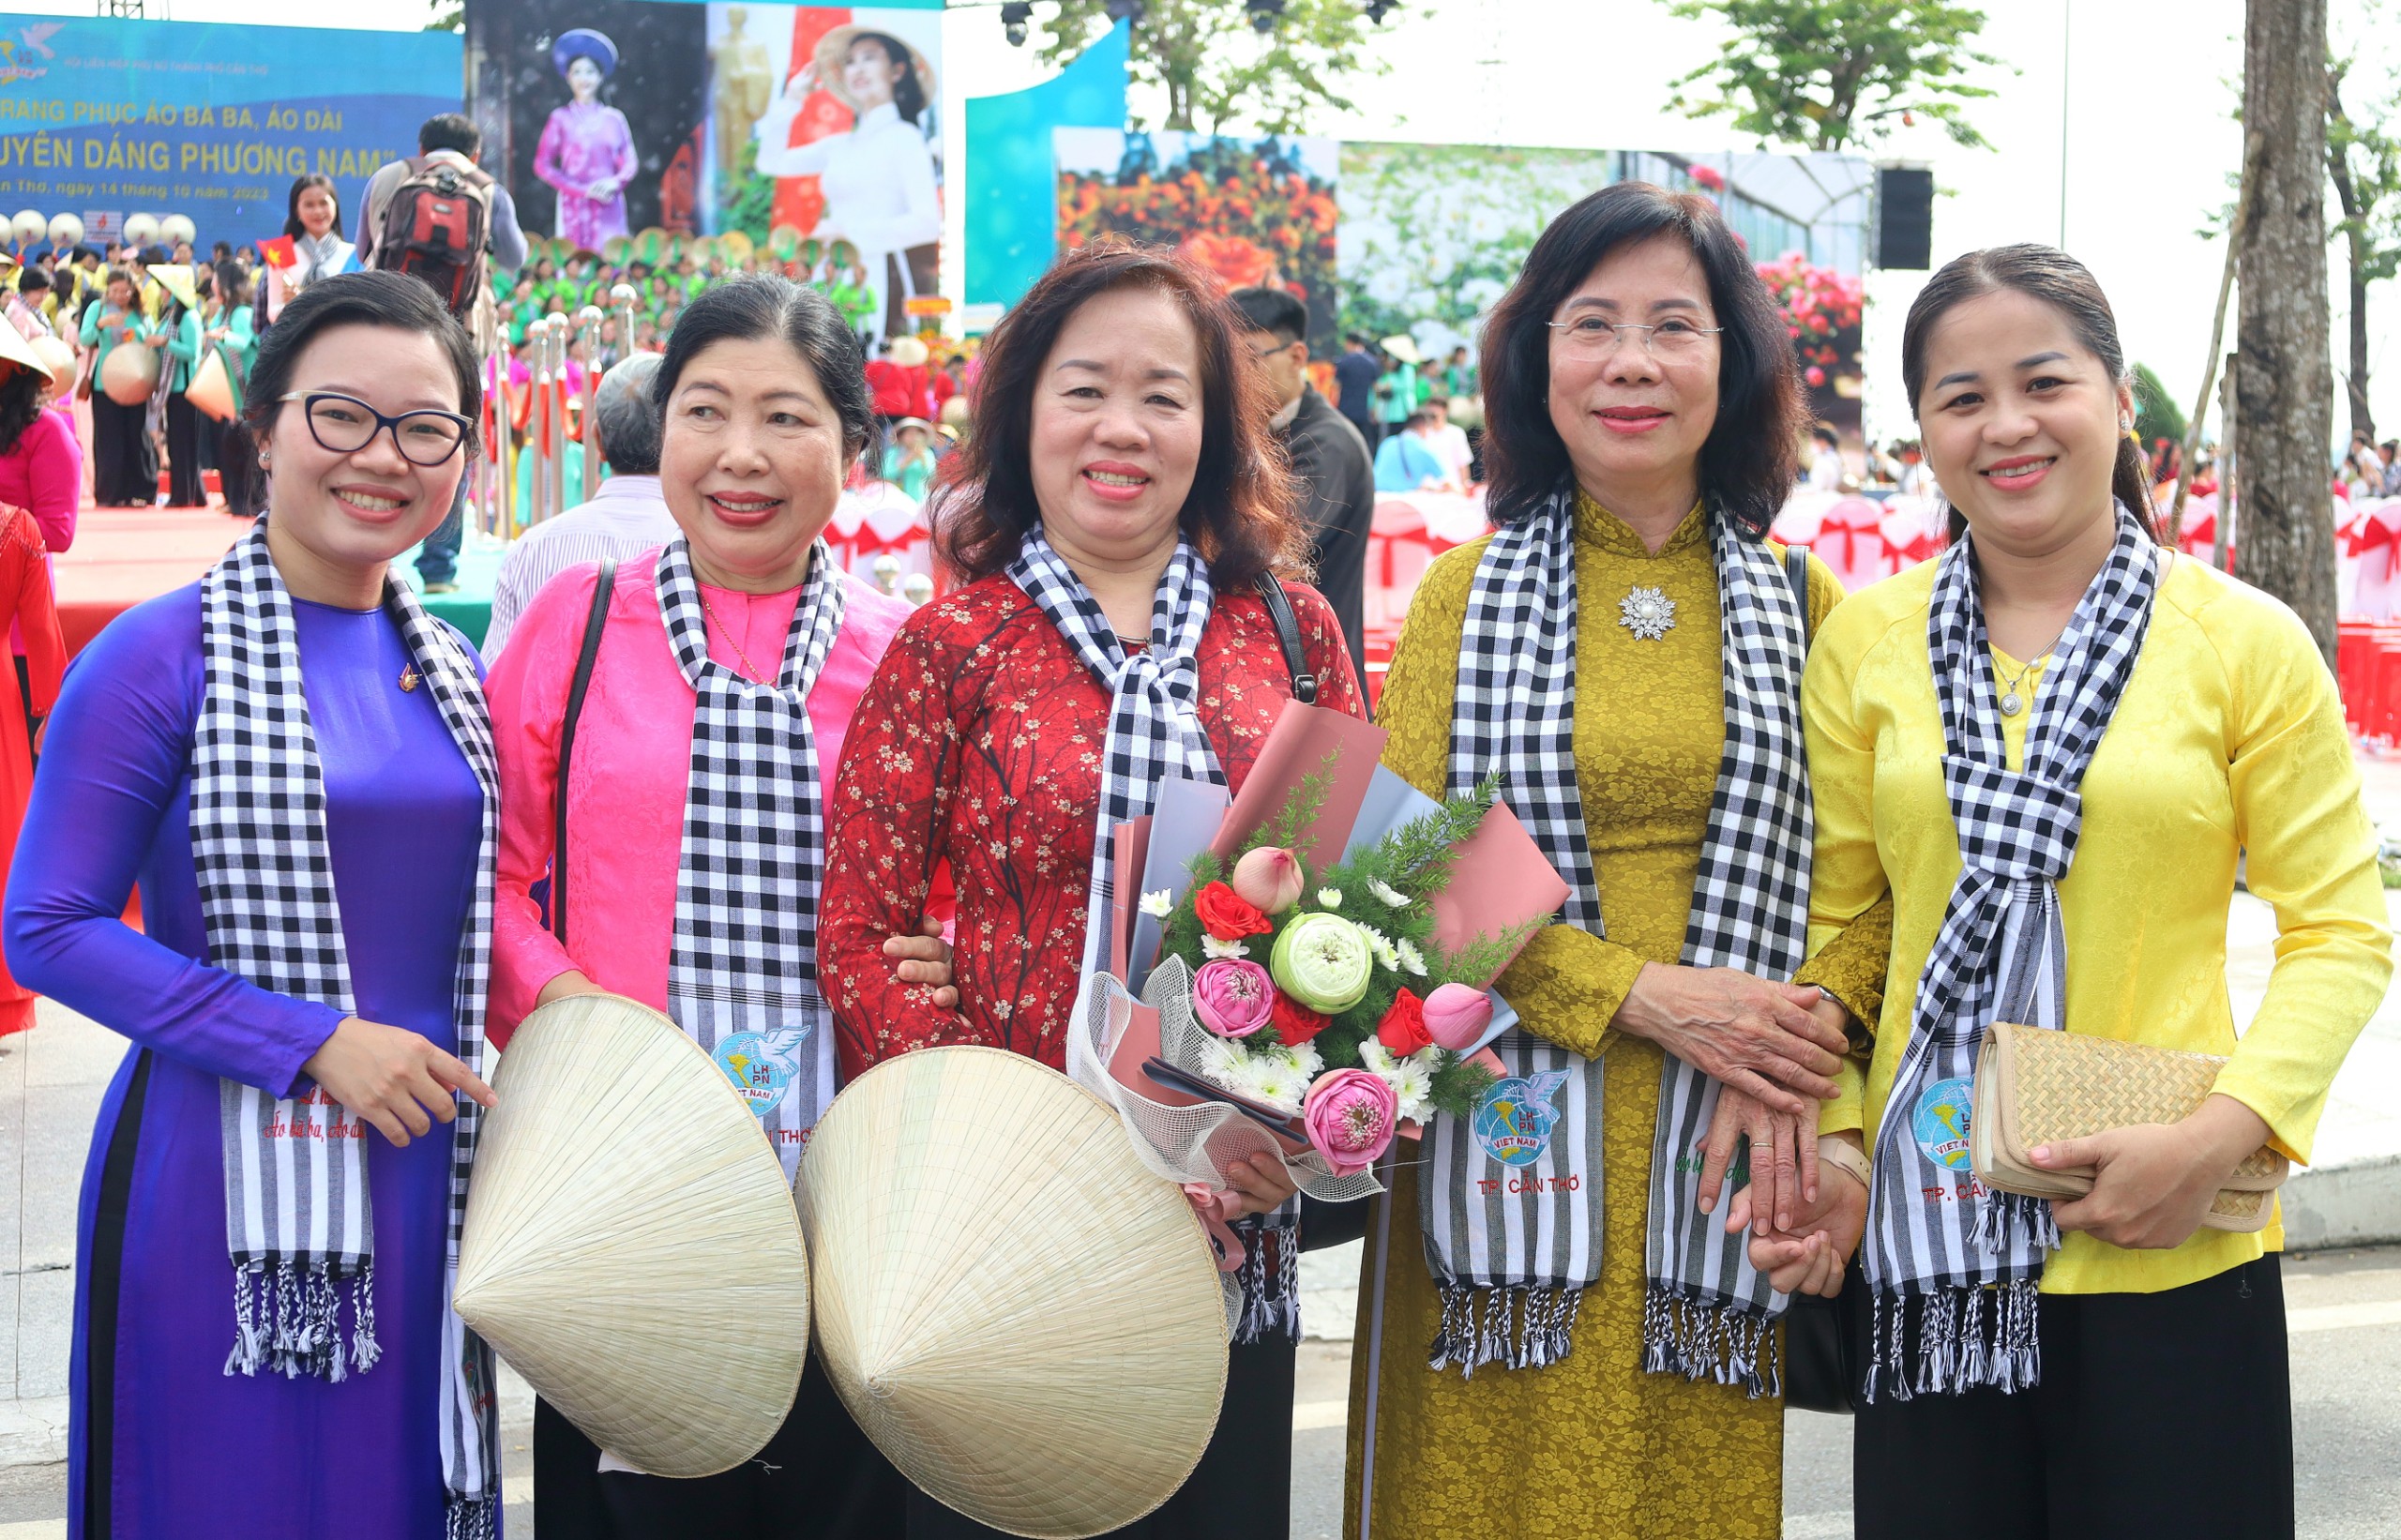 Các nguyên lãnh đạo và lãnh đạo nữ trong trang phục áo bà ba và áo dài hưởng ứng chương trình.